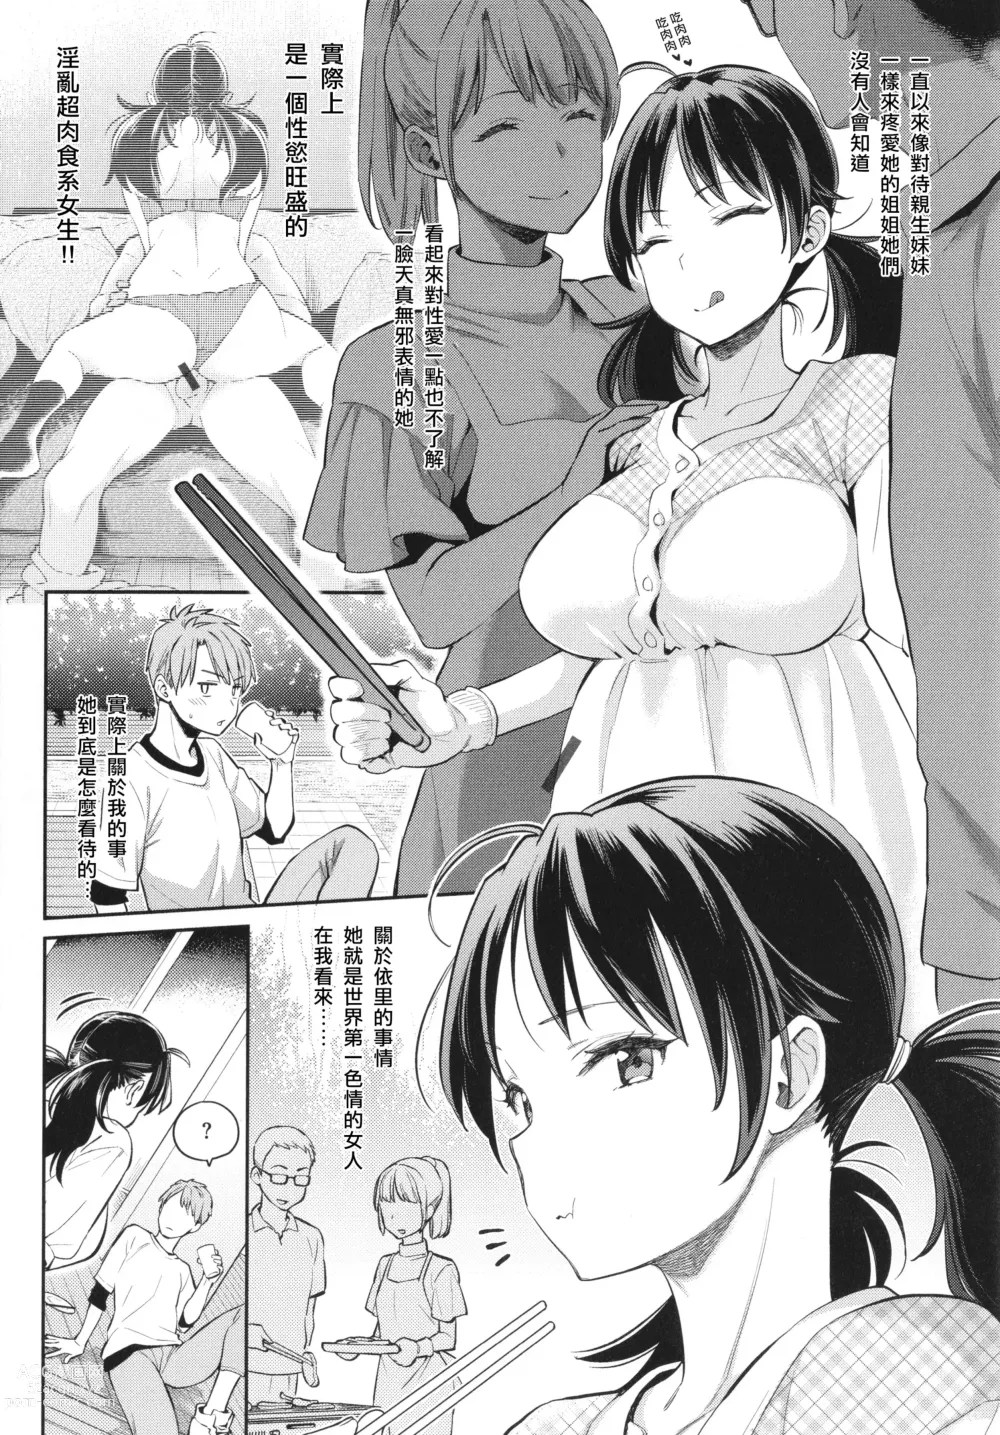 Page 14 of manga Anata to Gachinko Taiketsu - ANATA TO GACHINKO BATTLE!!!!! + Toranoana Gentei Leaflet